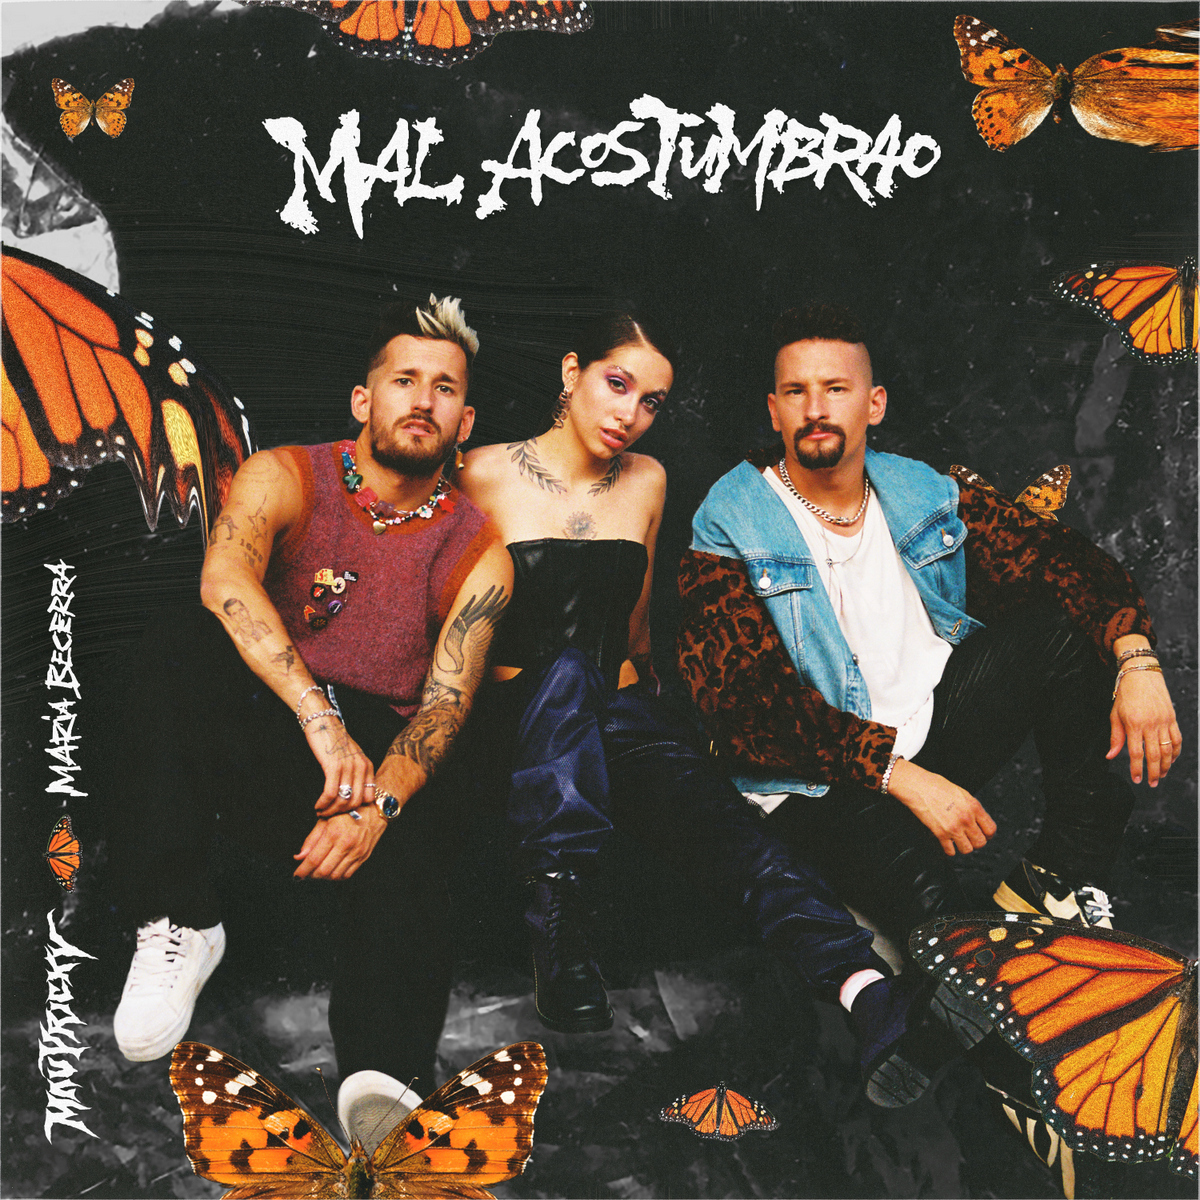 Las superestrellas latinas Mau y Ricky estrenan su nuevo sencillo y vídeo “Mal Acostumbrao” junto a Maria Becerra